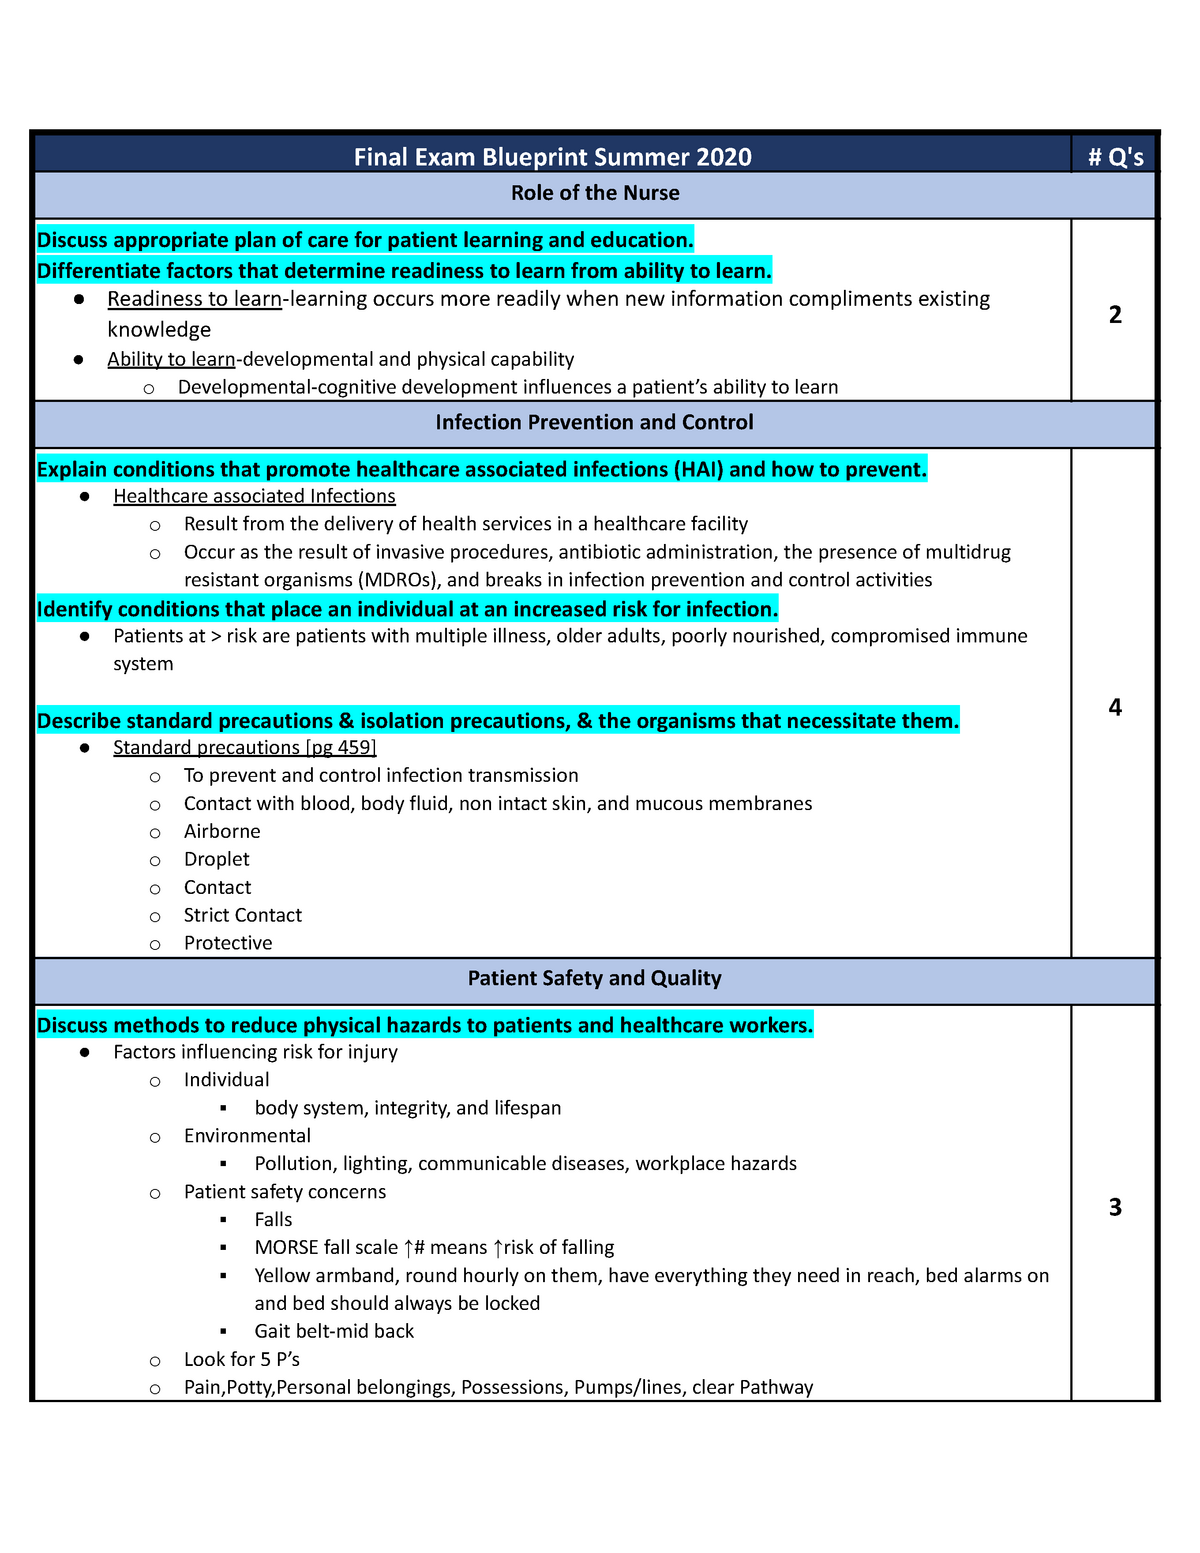 fundamentals-final-exam-blueprint-final-exam-blueprint-summer-2020-q-s-role-of-the-nurse